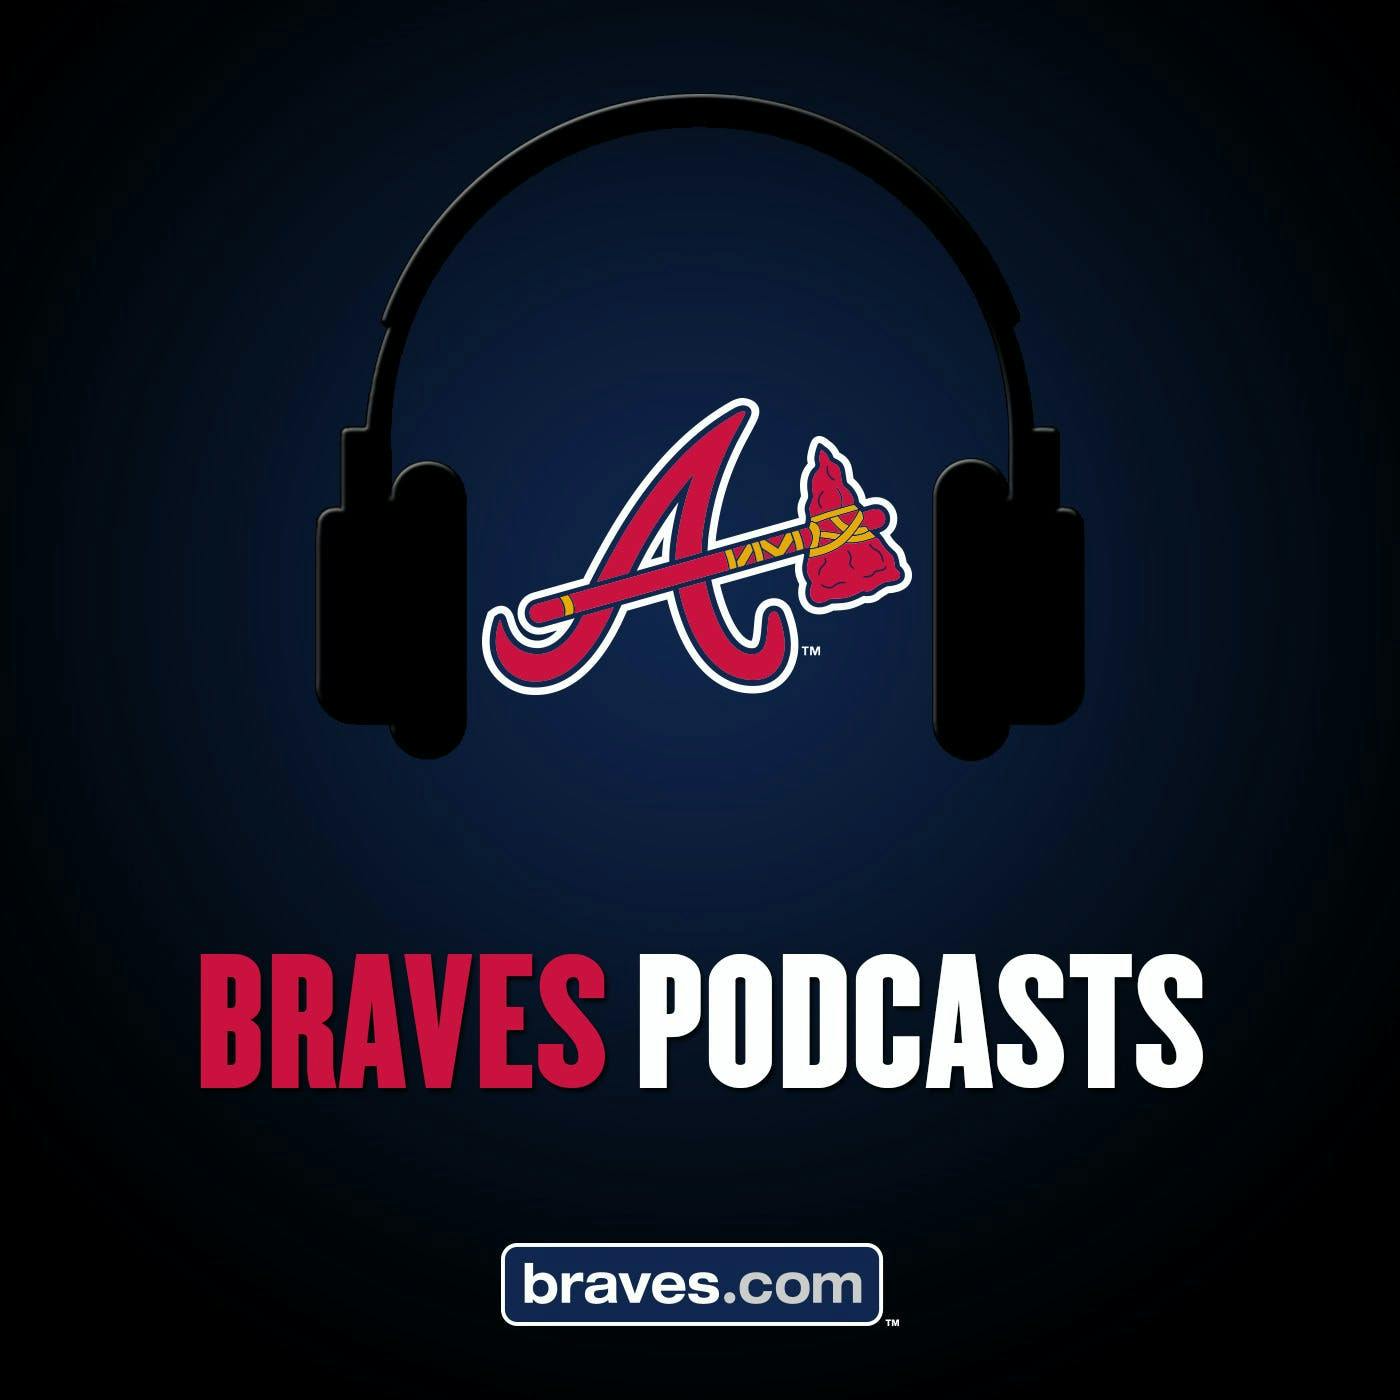 4/15/17: MLB.com Extras | Atlanta Braves open SunTrust Park